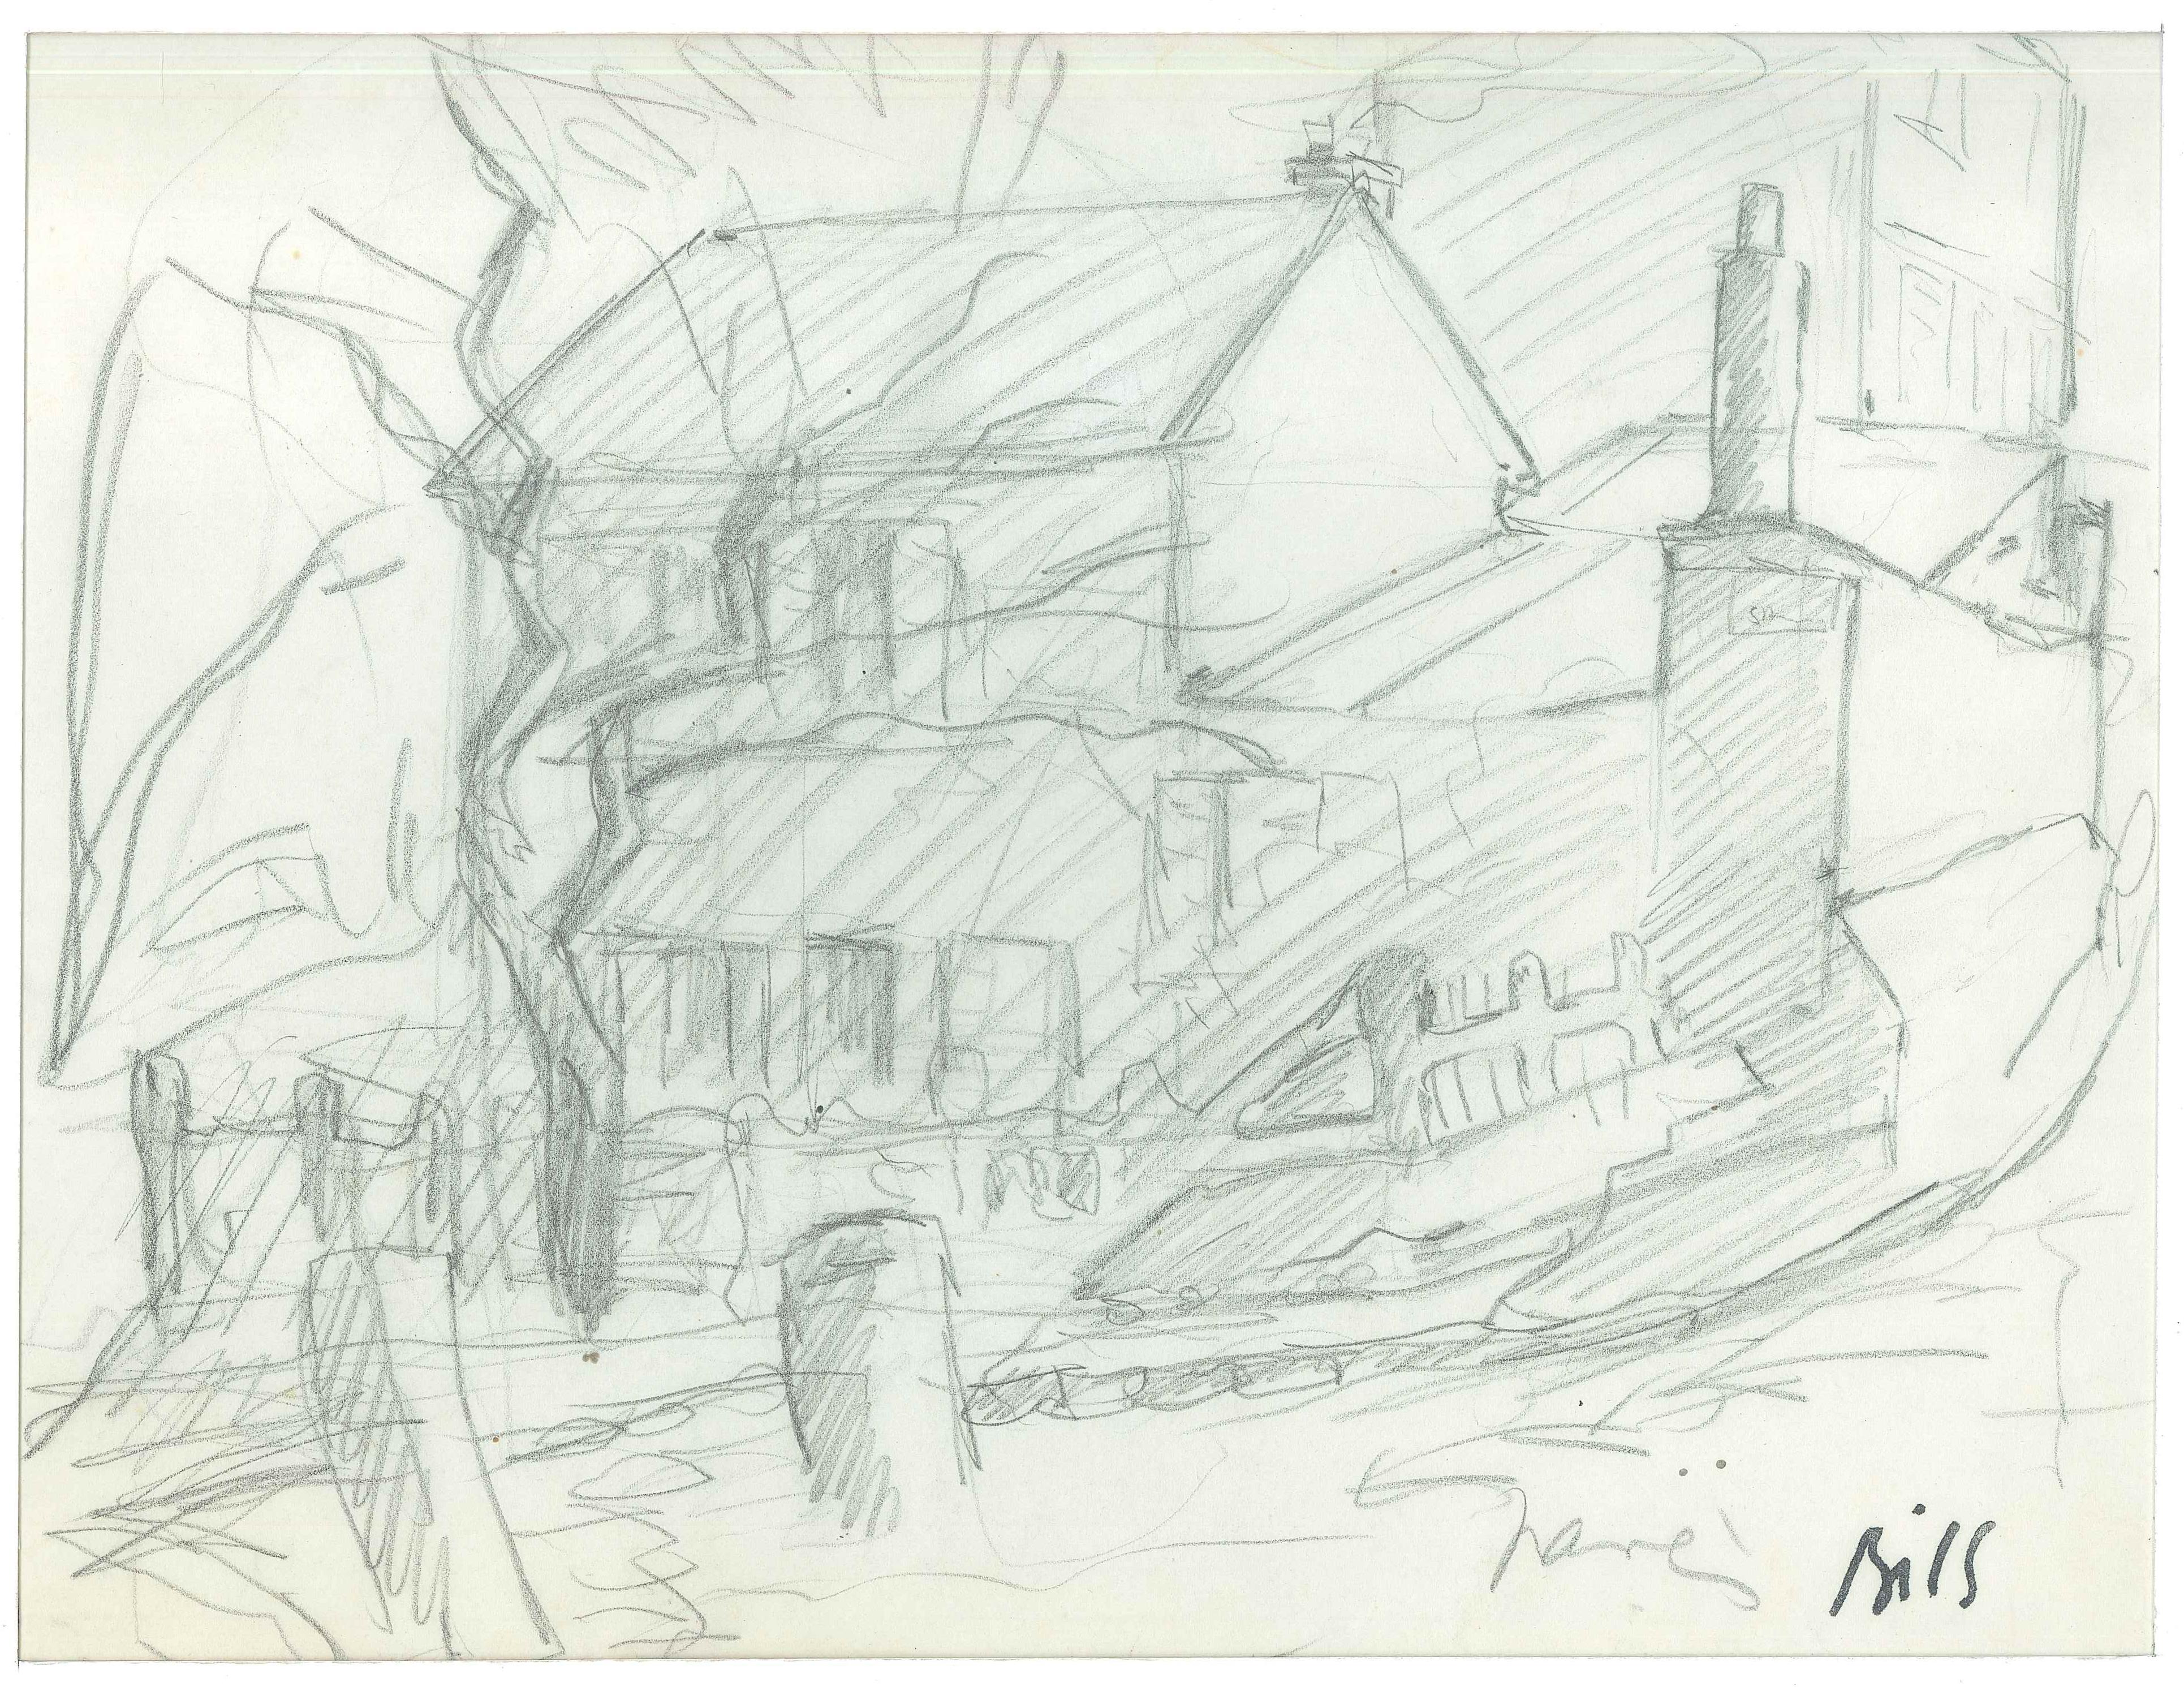 Household est un dessin original au crayon sur papier réalisé par Claude Bils dans les années 1950

L'état de conservation est bon à l'exception de quelques petits plis.

signé en bas à droite.

Passepartout inclus 40,5 x 33,5

L'œuvre représente le